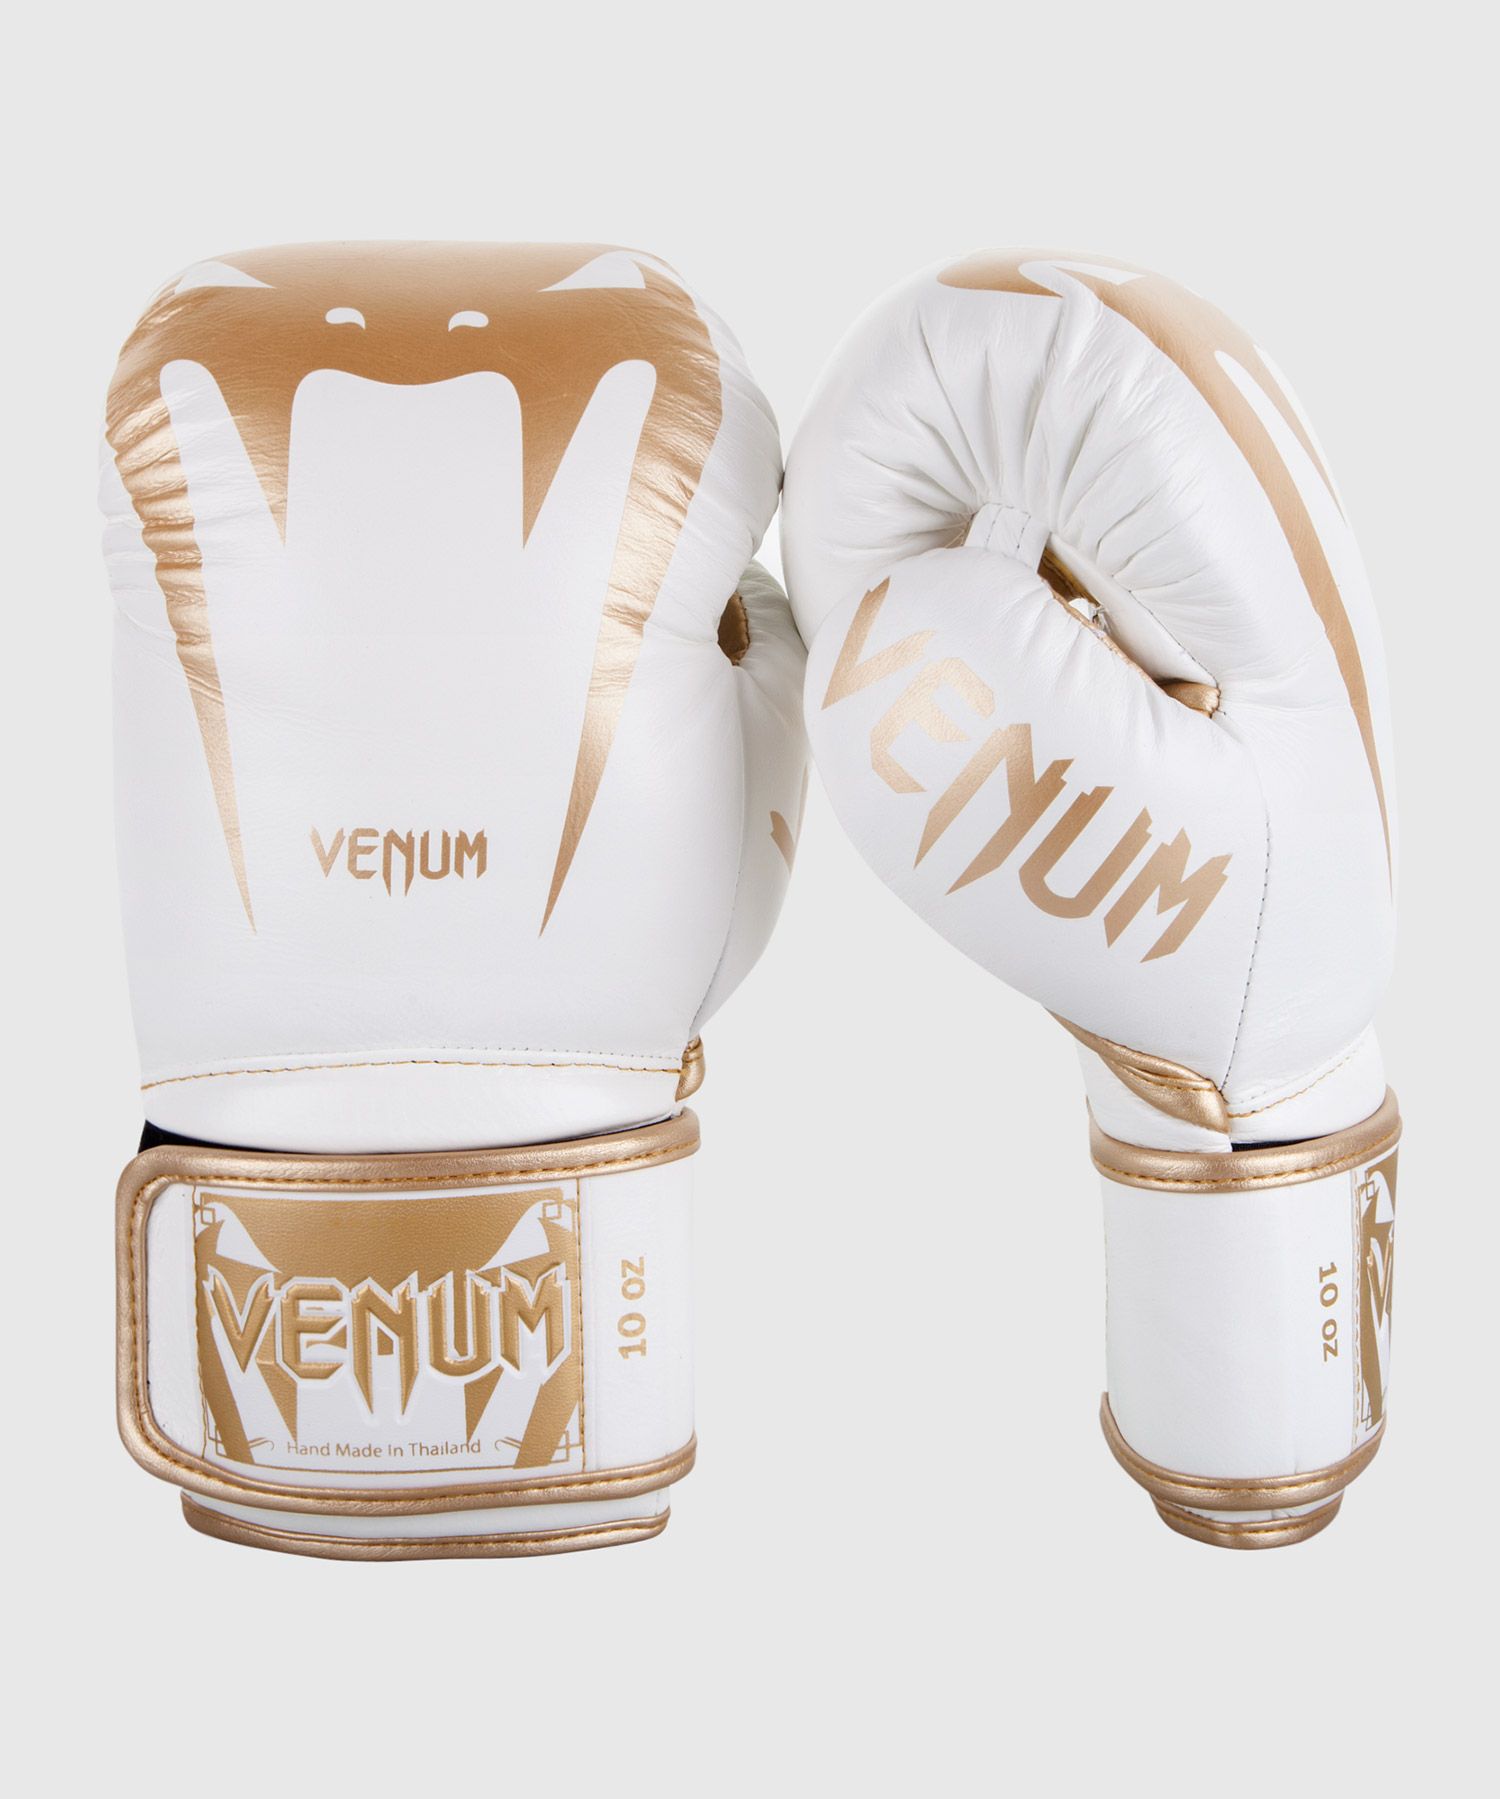 Venum Giant 3.0 ボクシング グローブ ナッパ レザー ホワイト/ゴールド BEEST 日本唯一のVenum専門  正規販売店